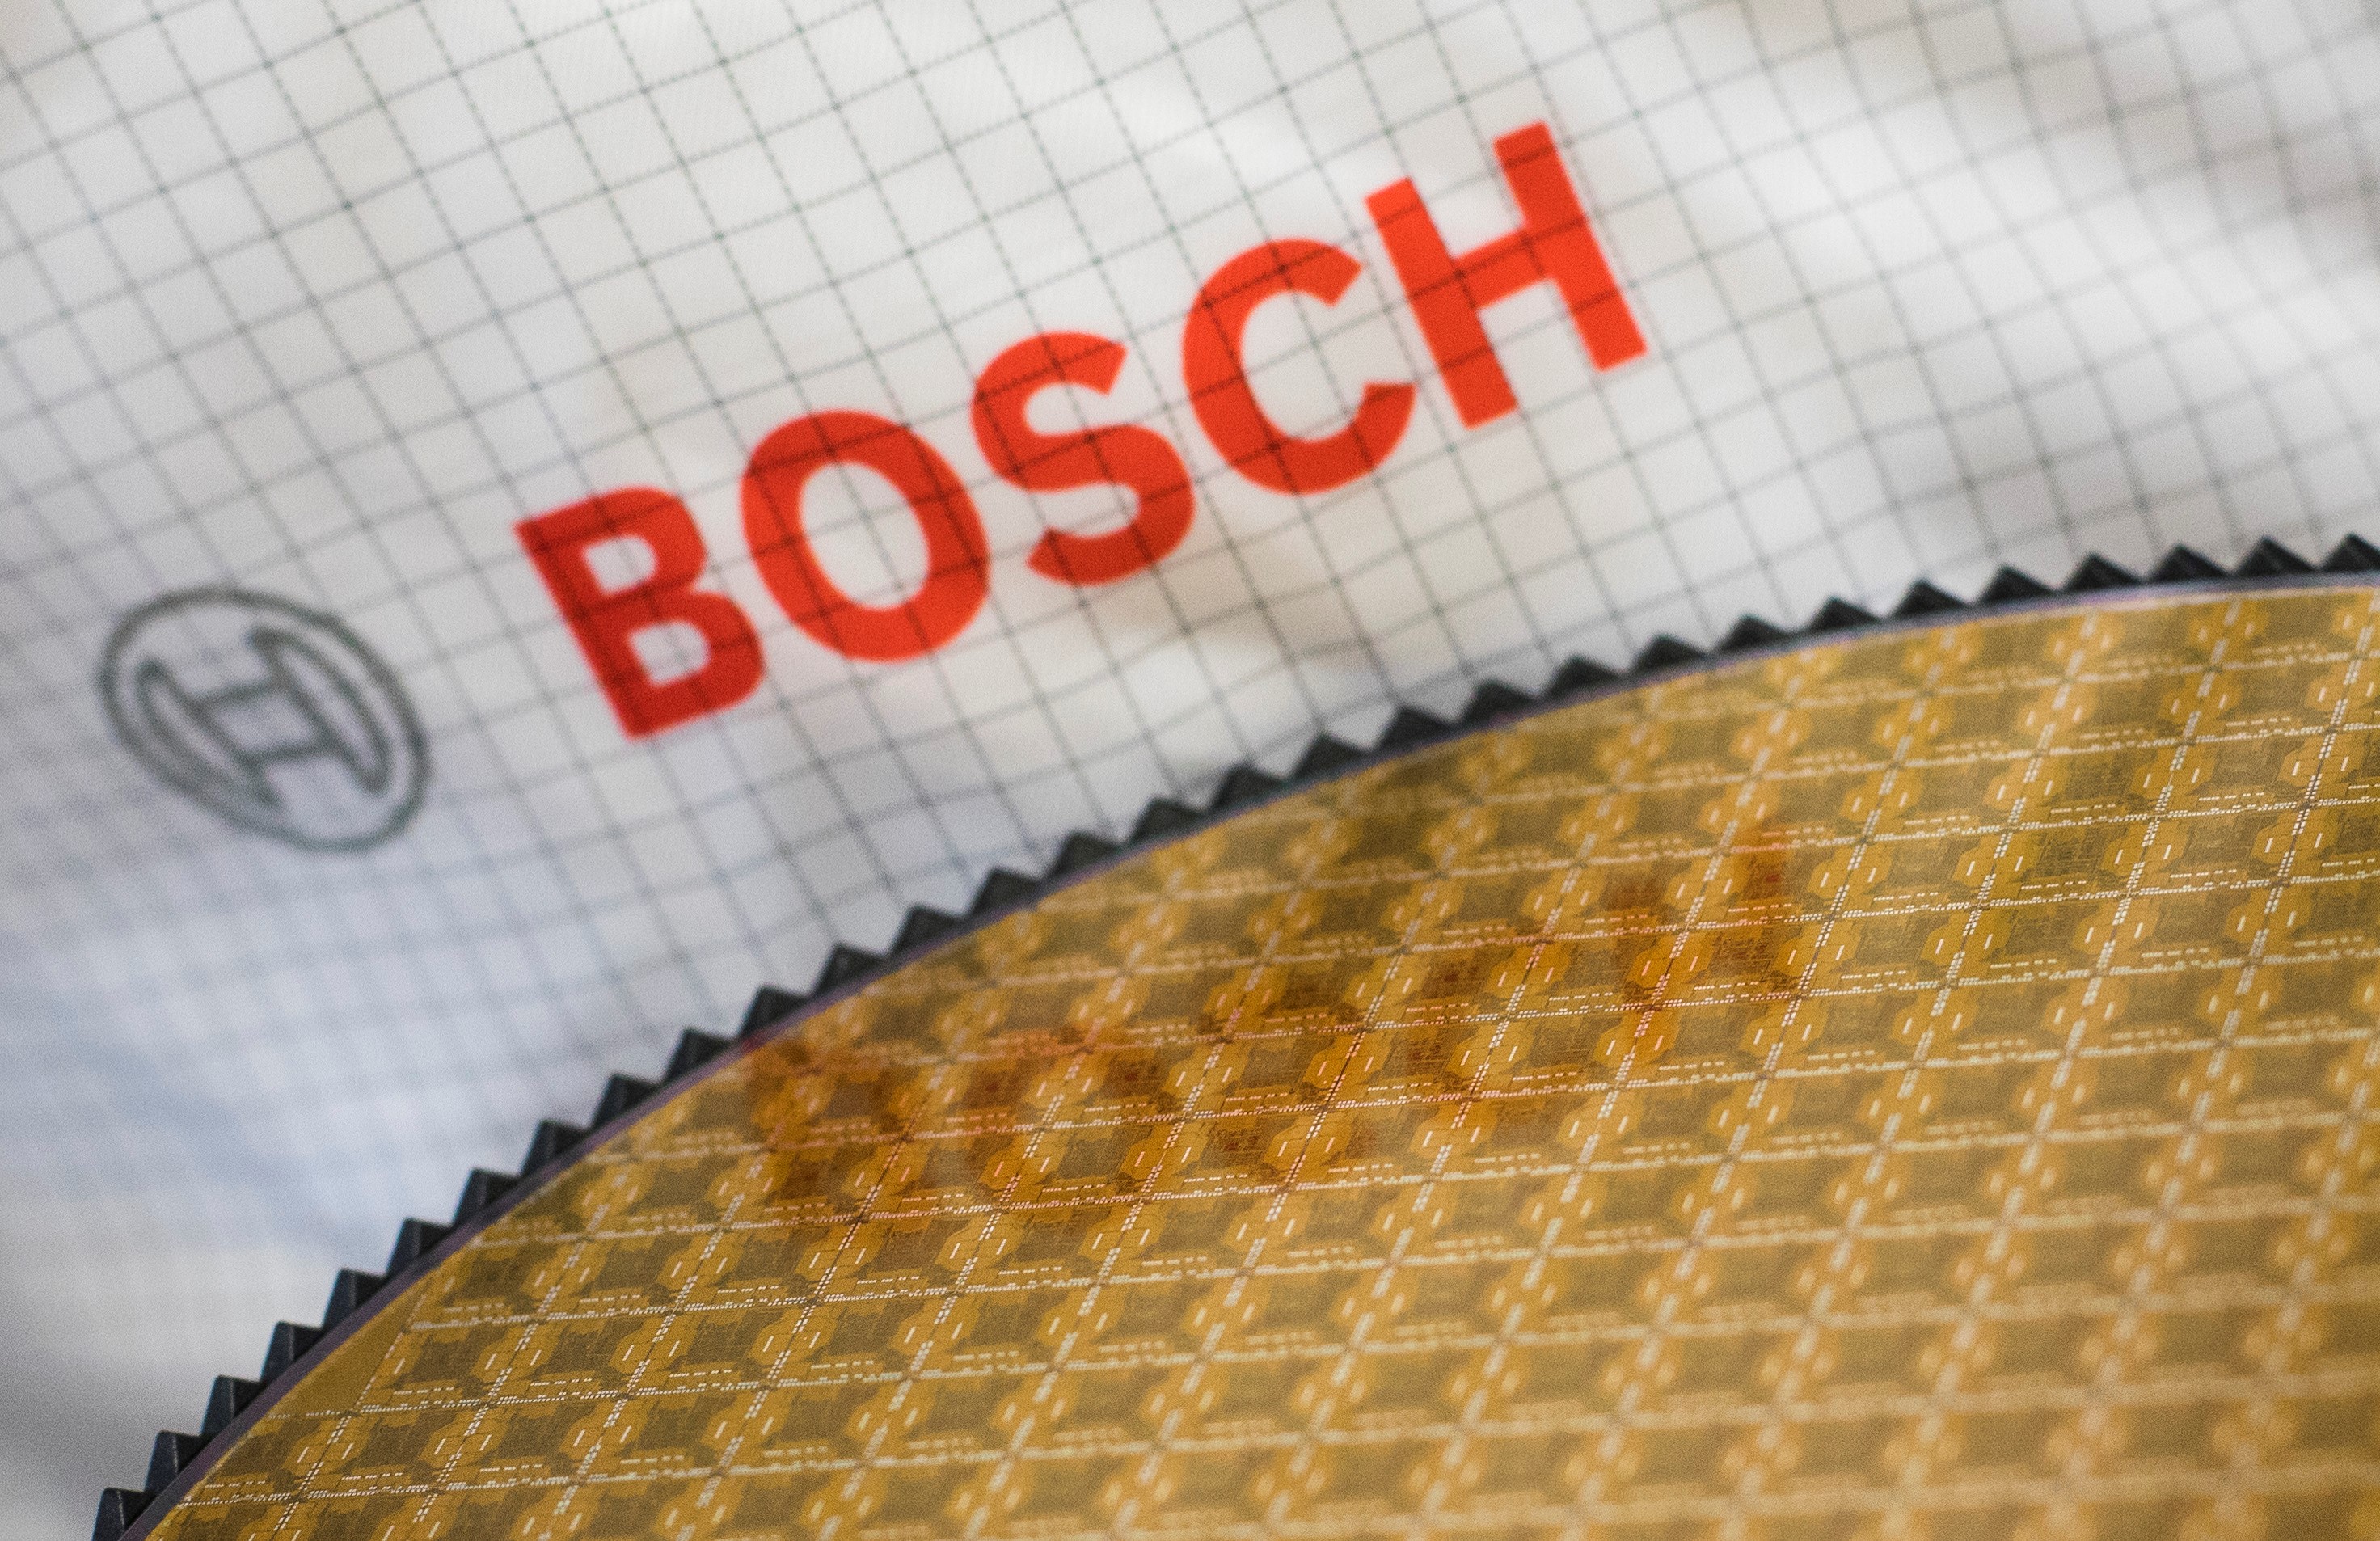 Les semi-conducteurs, un secteur porteur dans lequel Bosch progresse plus vite que le marché